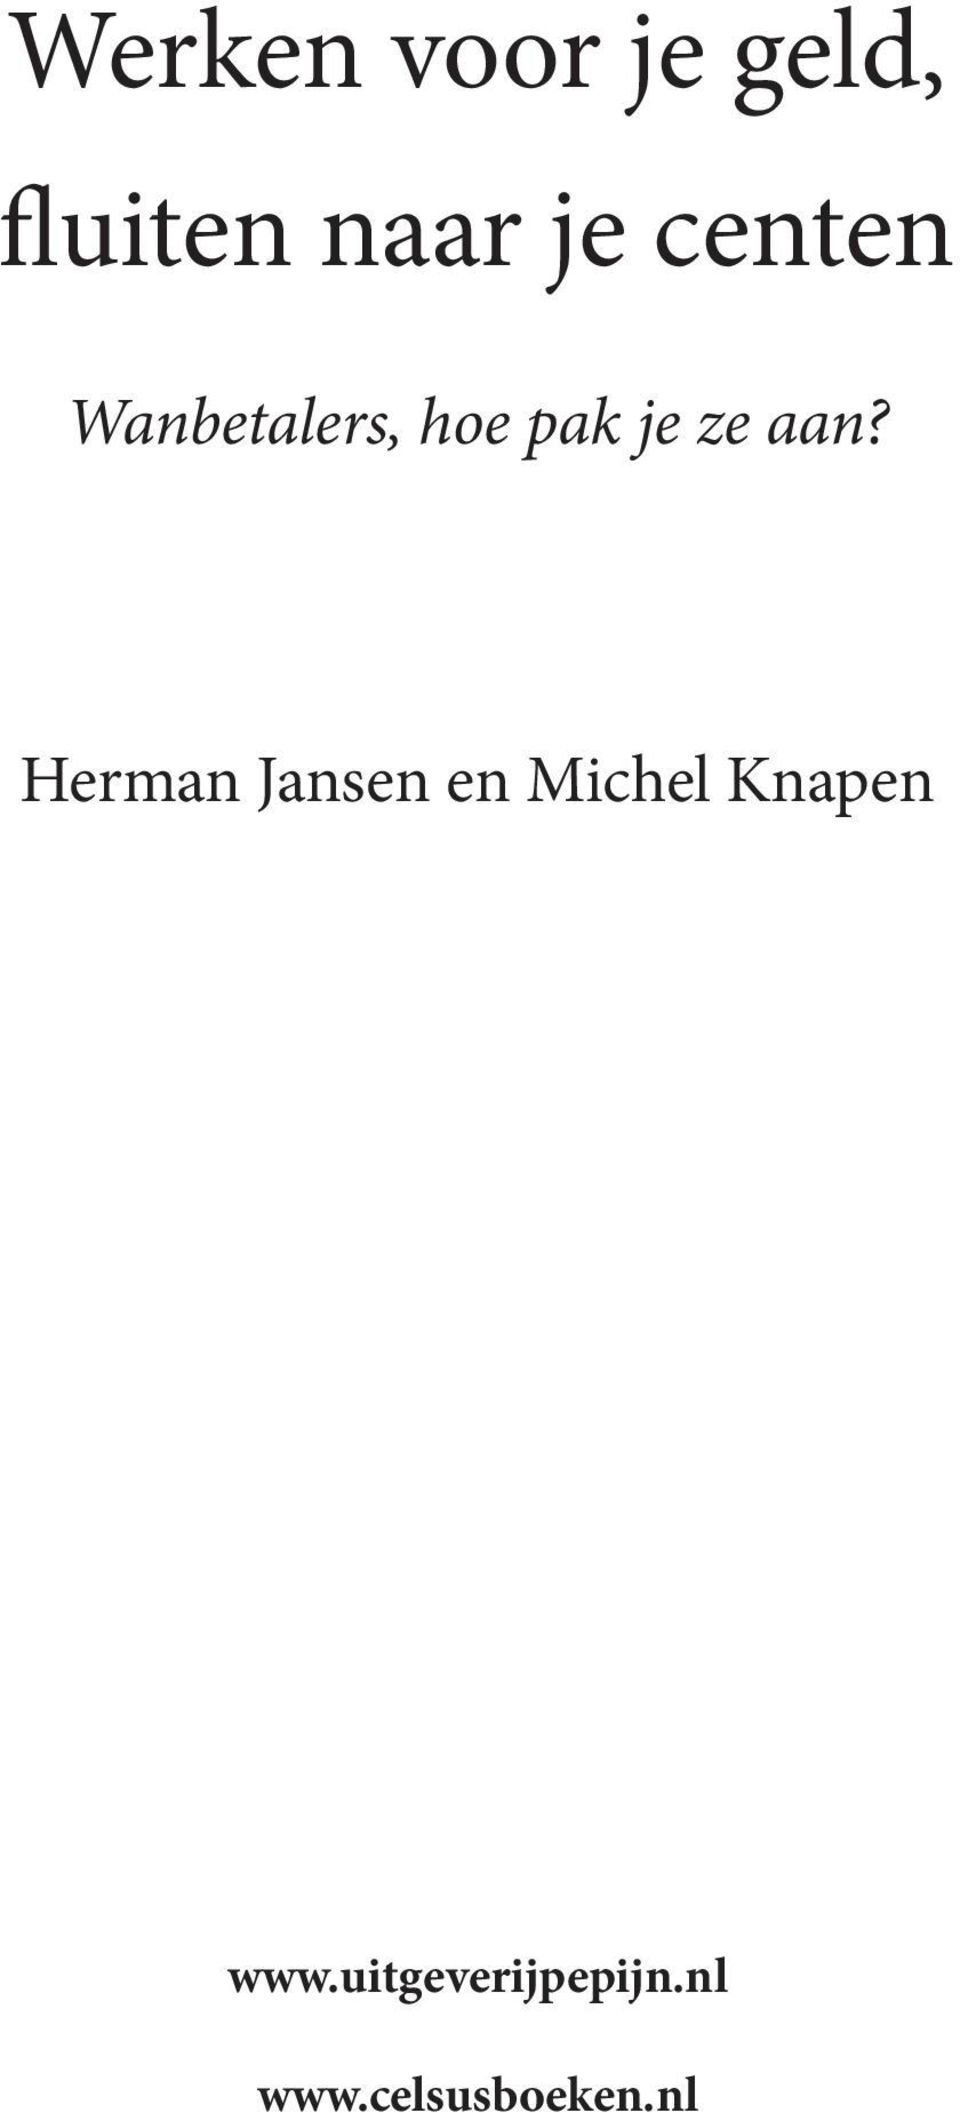 Herman Jansen en Michel Knapen www.